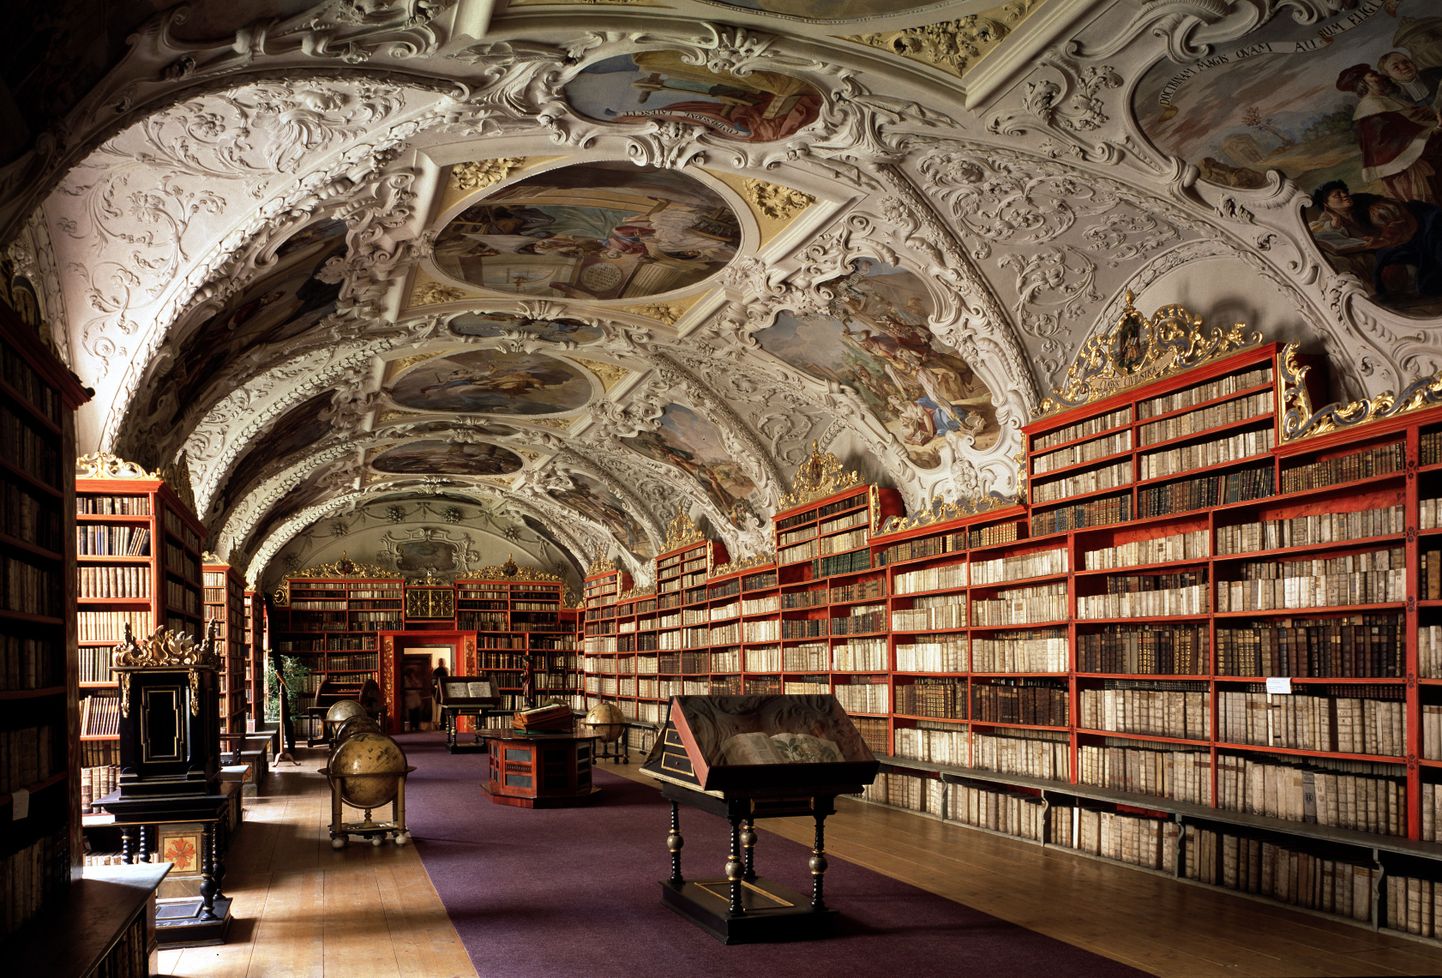 Strahovi kloostri raamatukogu teoloogiasaal ehitati 17. sajandi lõpus.